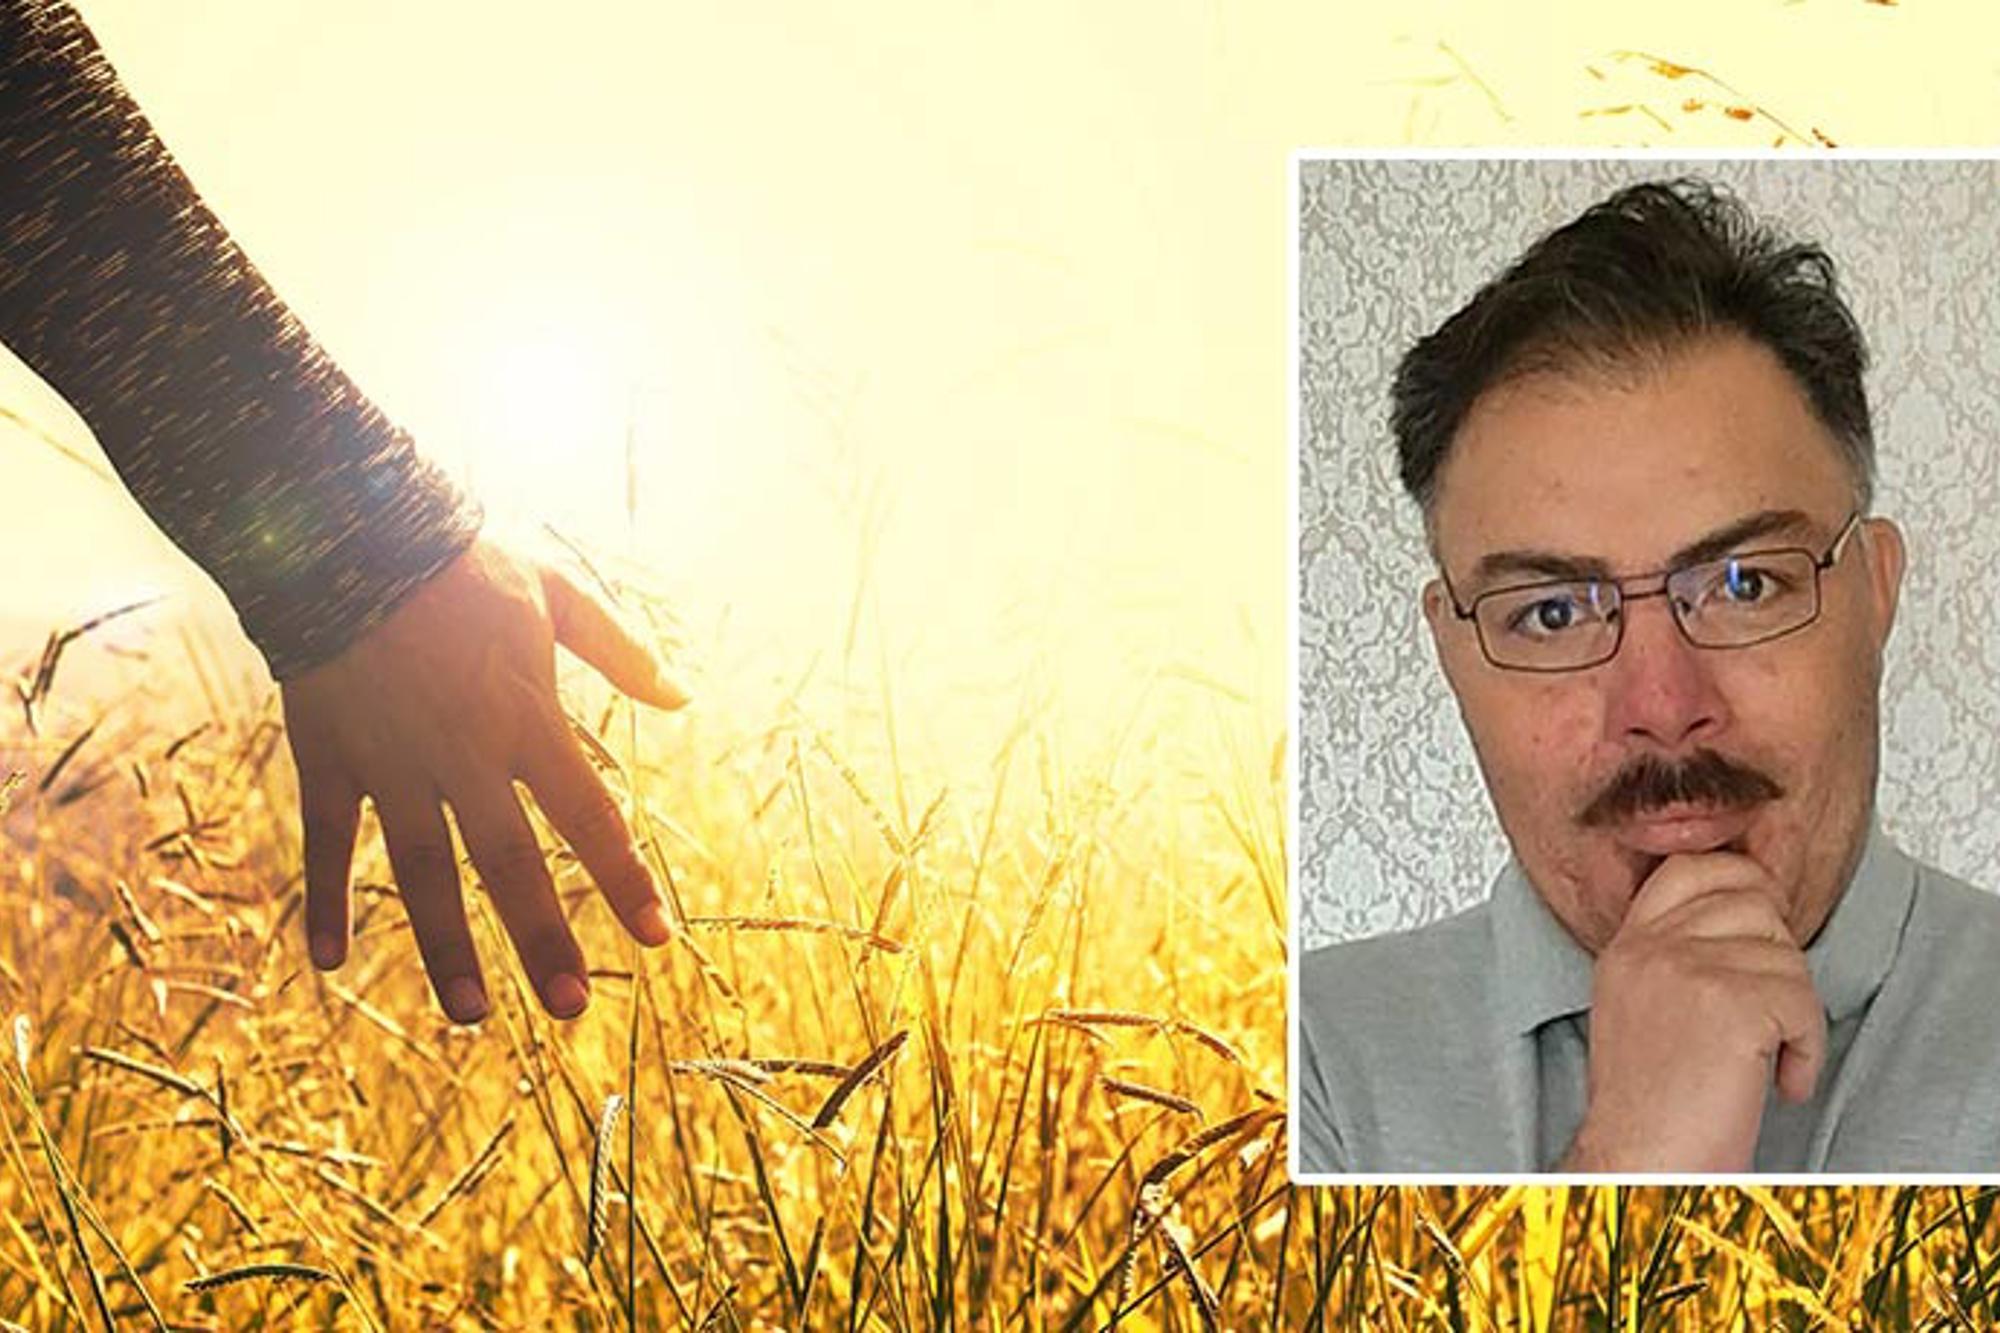 Till vänster: En person som drar handen mot grässtrån på en äng. Till höger: Porträttbild av Alexis Magnusson.